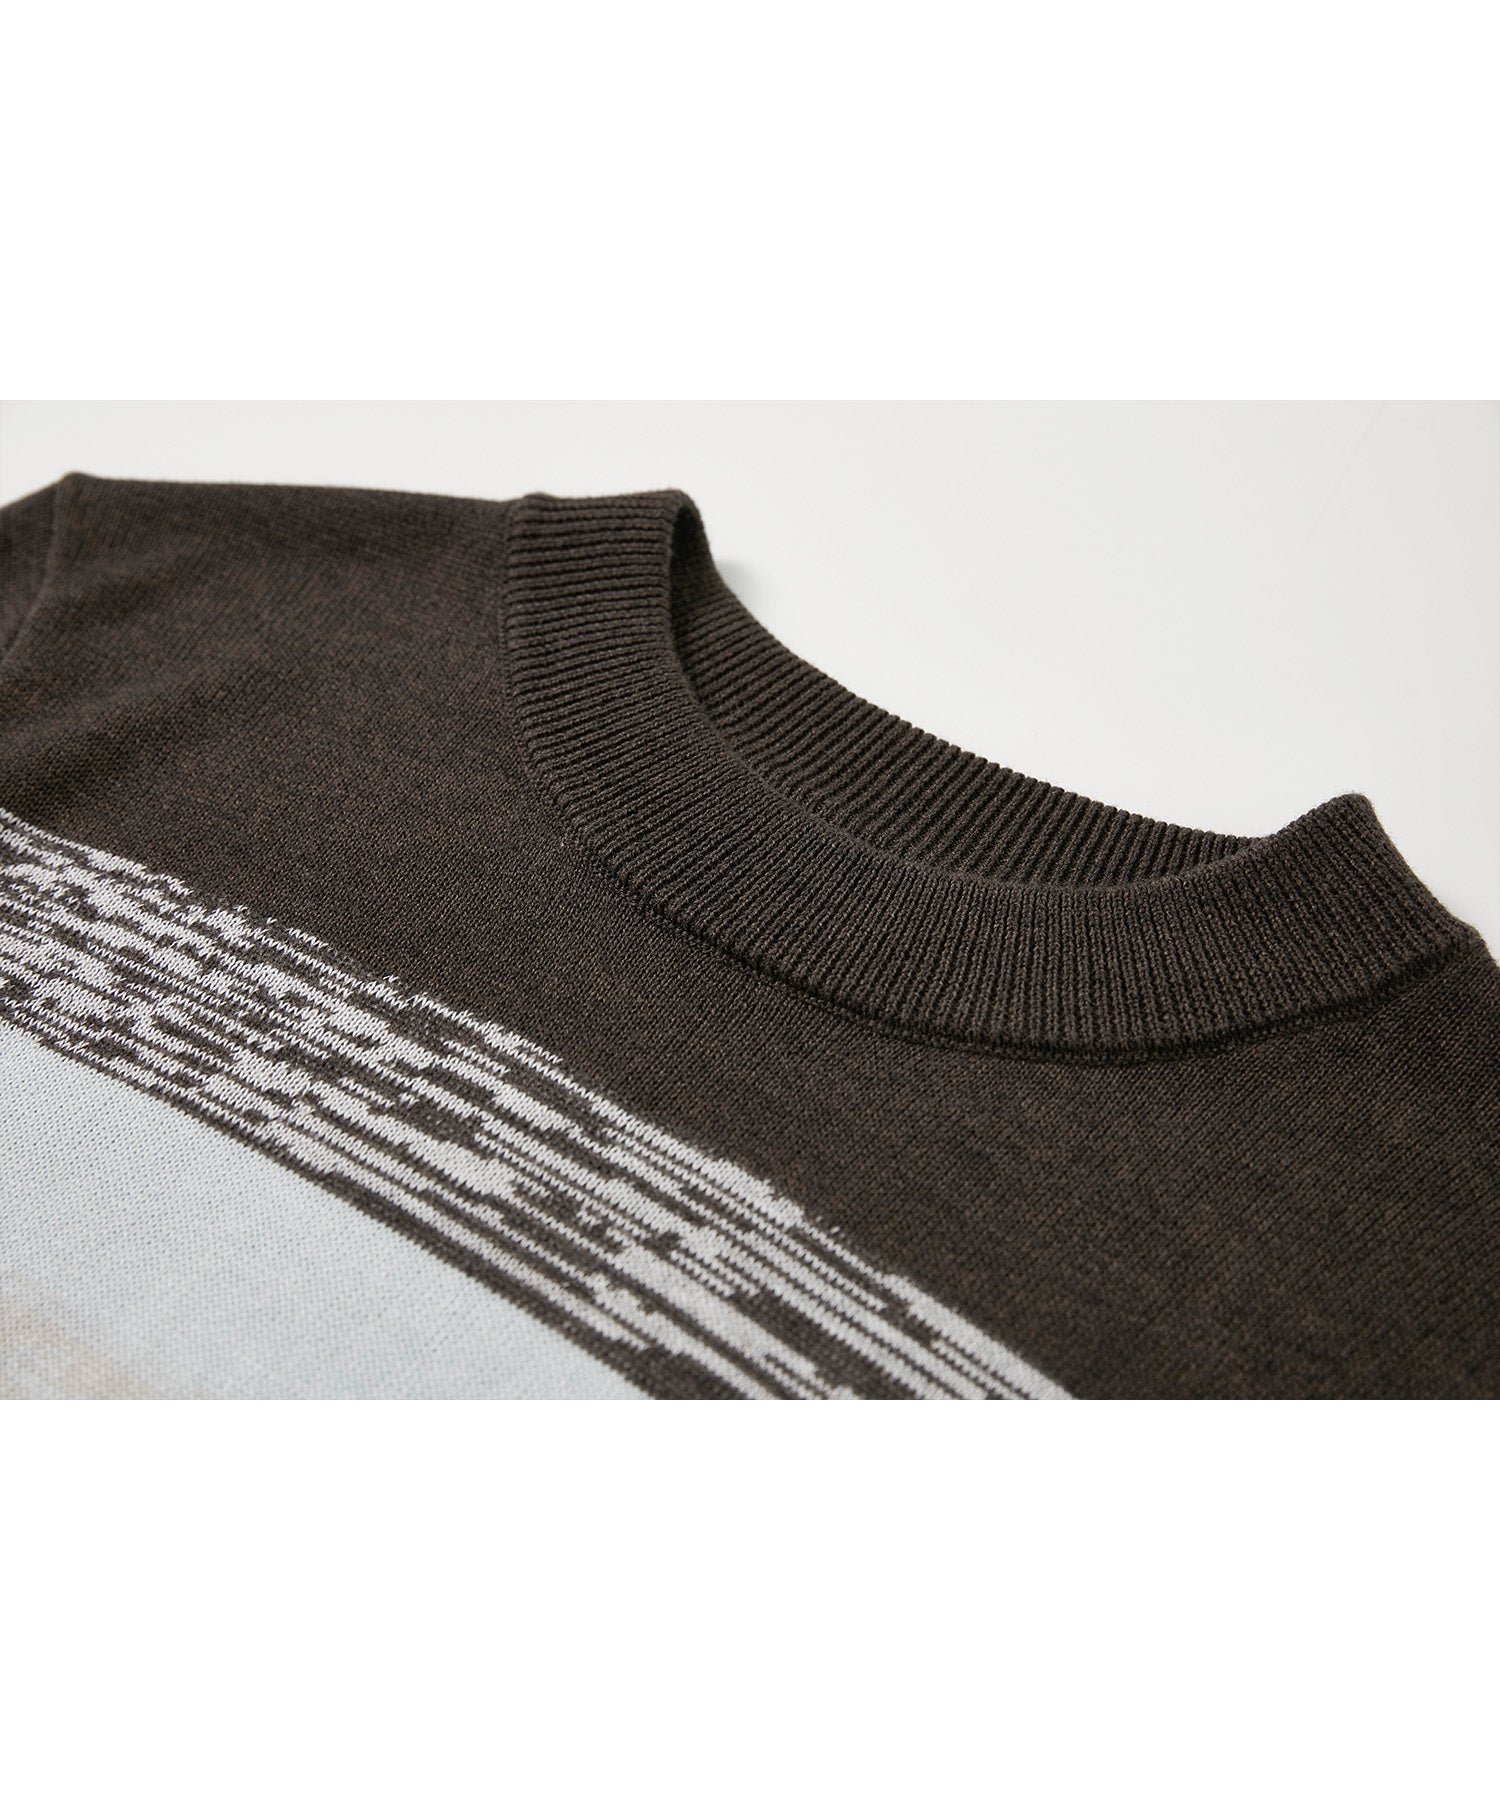 Border grade knit T-shirt 